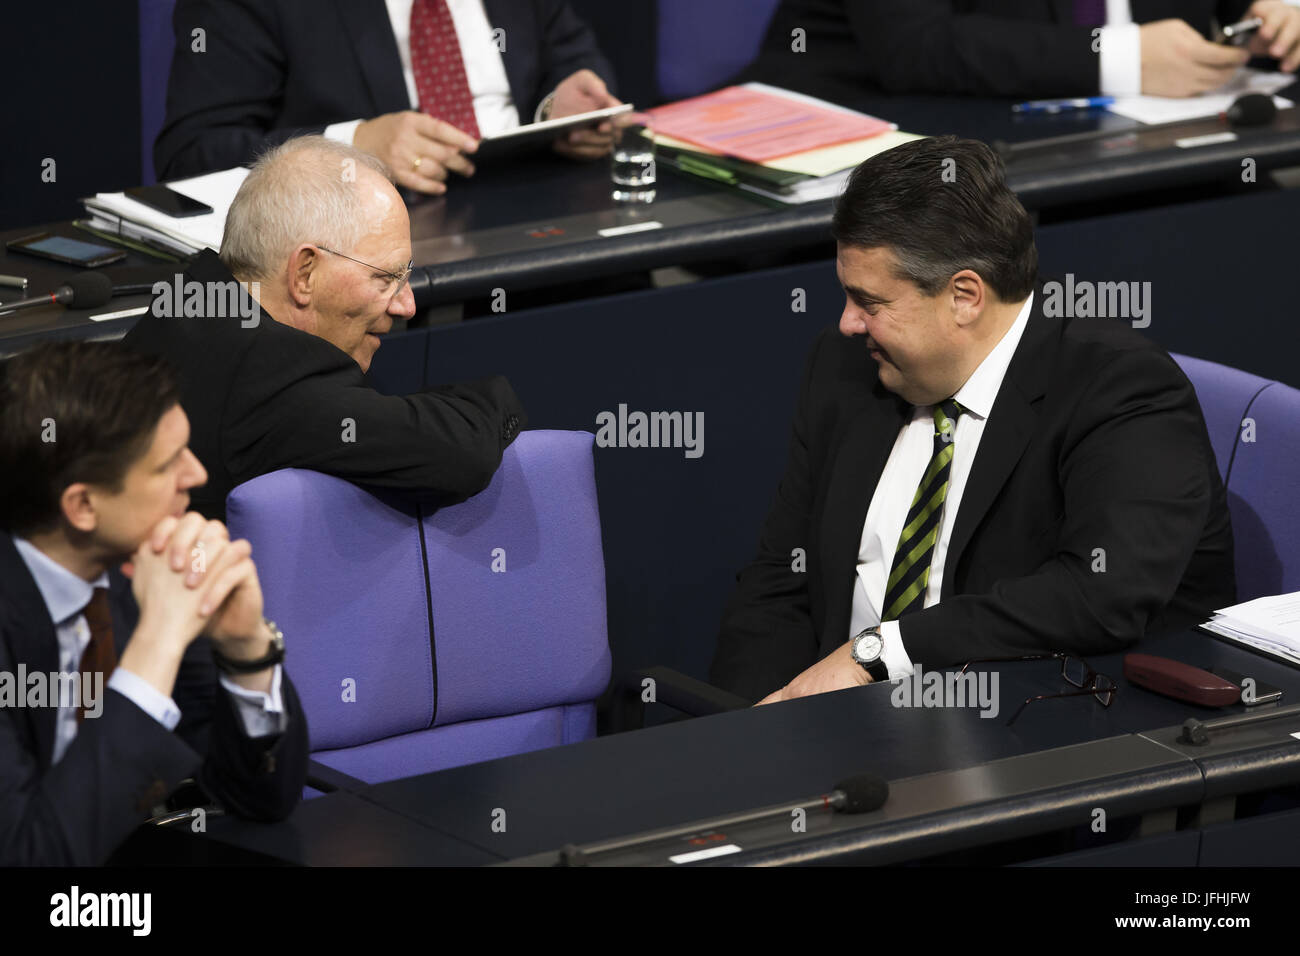 Politik politiker bundestag deutscher bund hi-res stock photography and ...